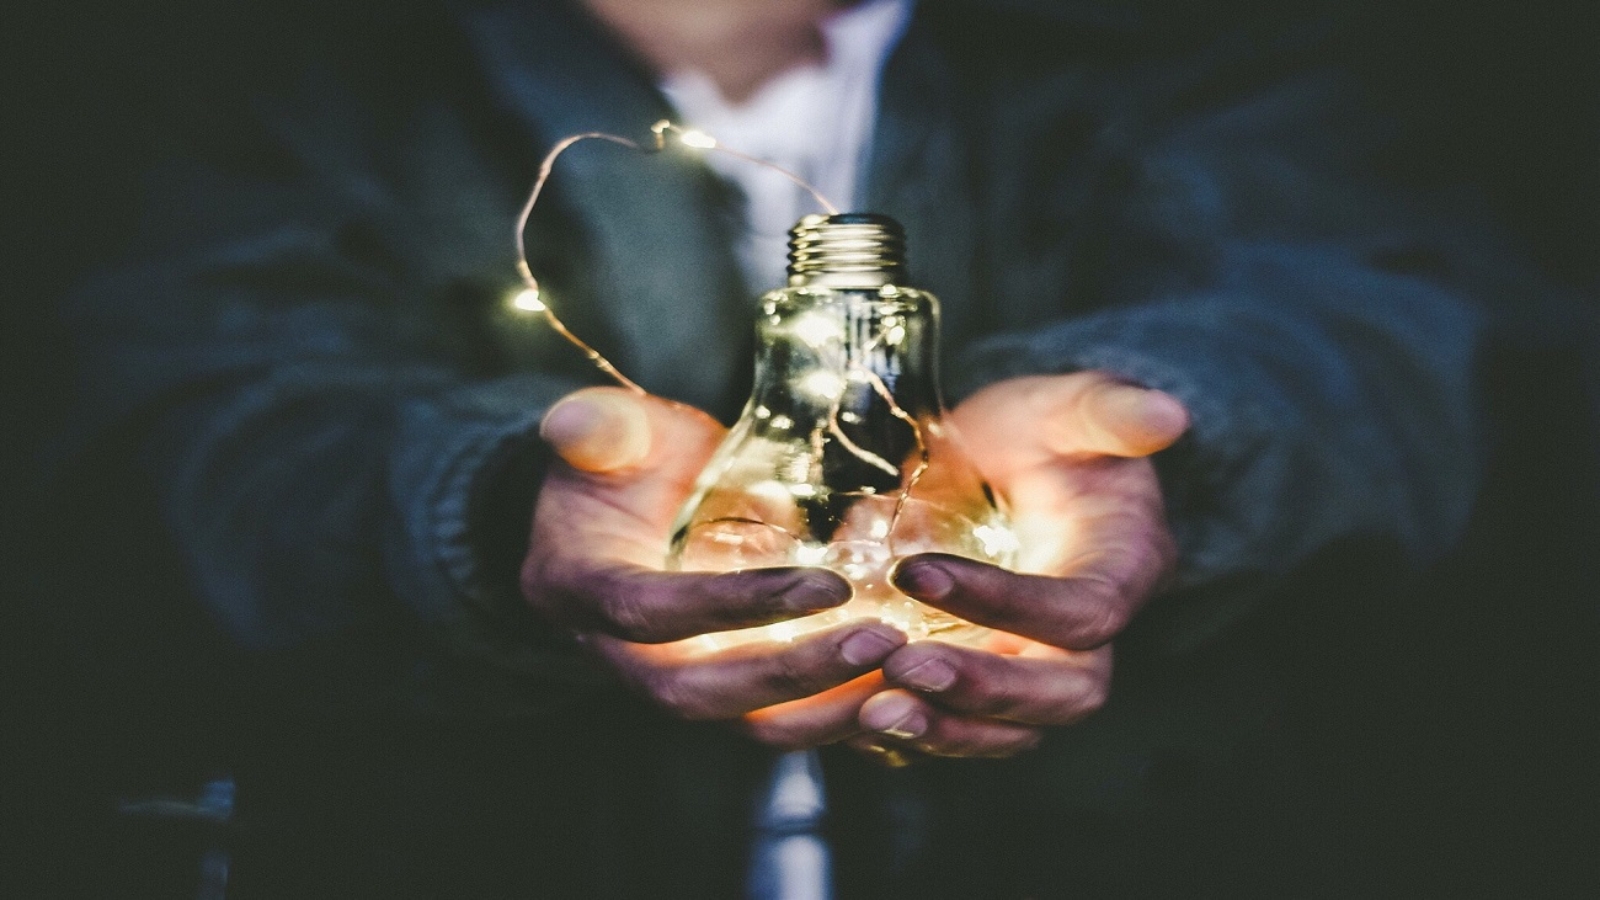 Capa do artigo sobre uso de energia. Foto de um homem segurando uma lâmpada em suas mãos com um fio de luz amarrado em volta dela.